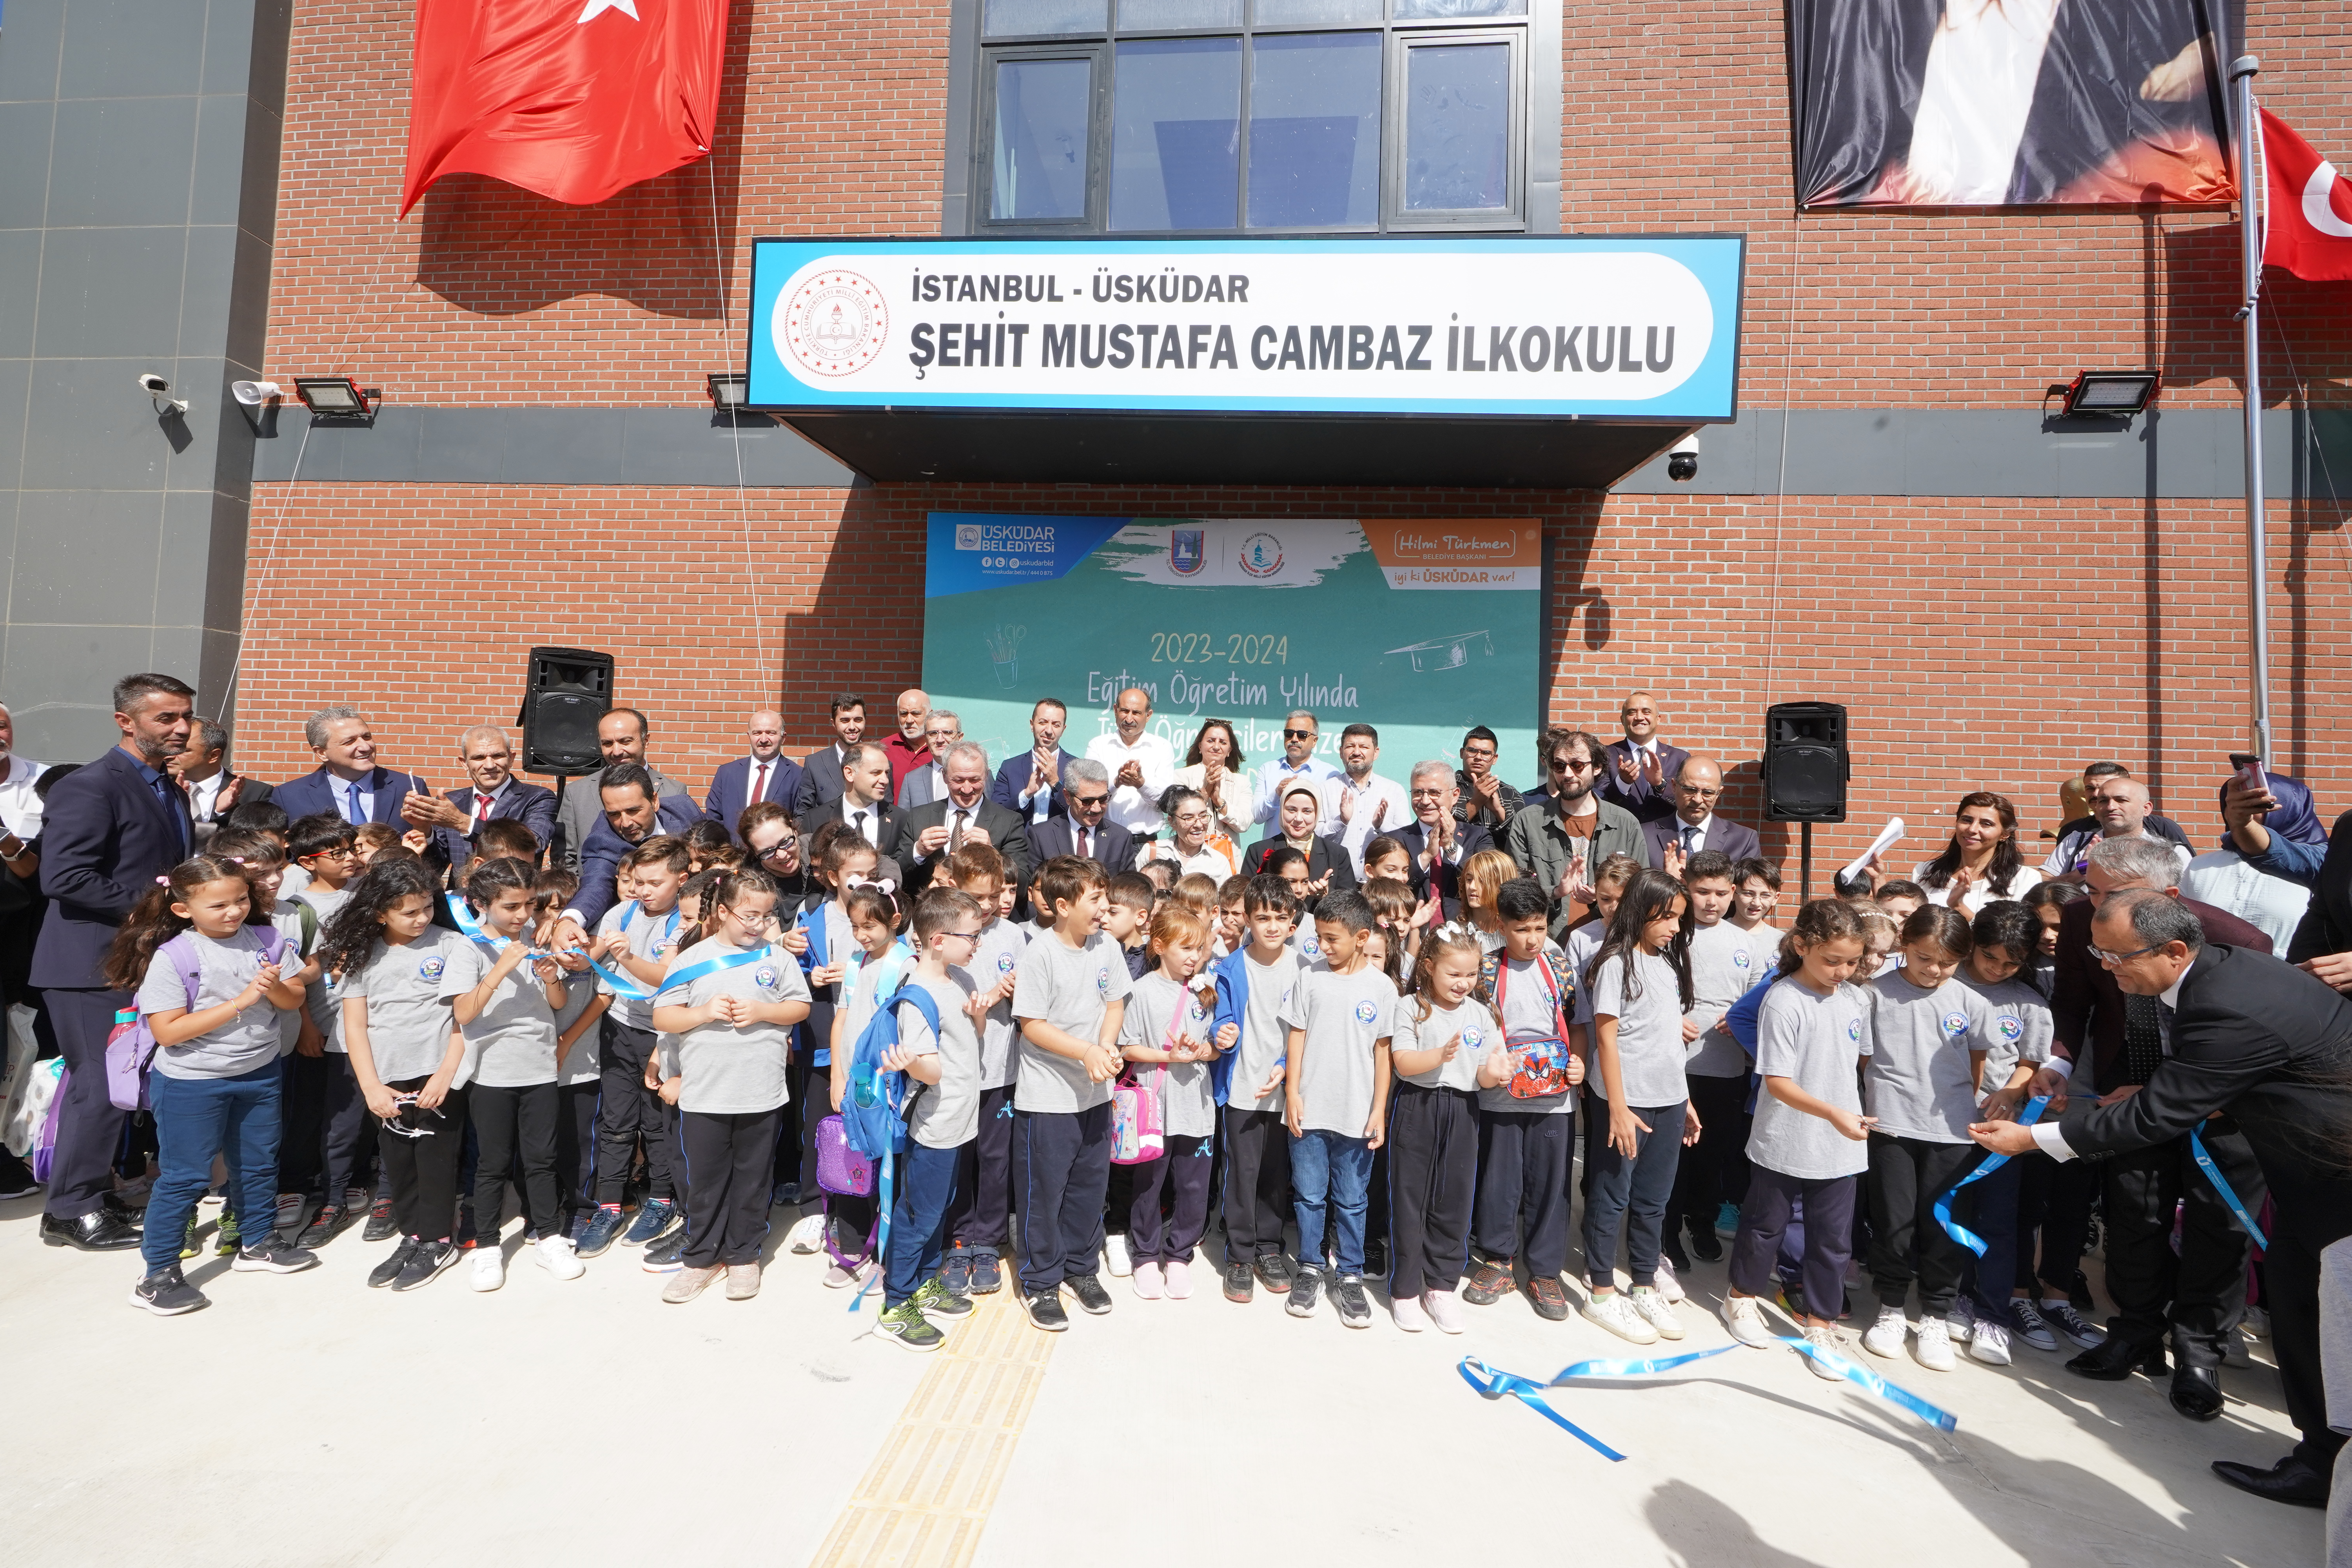 Üsküdar yeni öğretim yılına Şehit Mustafa Cambaz İlkokulu açılışıyla başladı